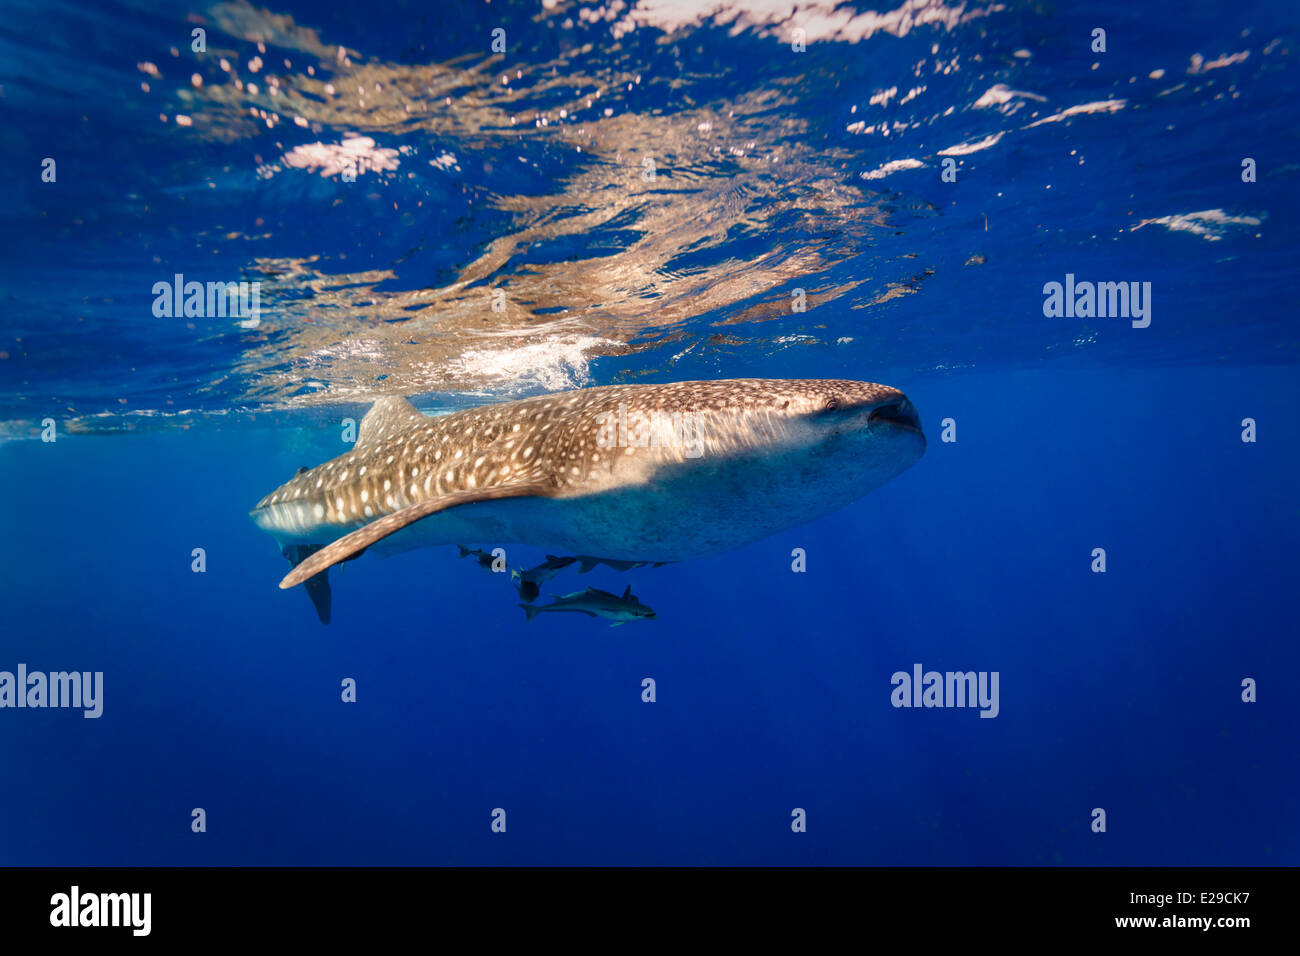 Requin baleine , Rhincodon typus, croisières près de la surface dans une eau bleue claire avec groupe de remords suivant Banque D'Images